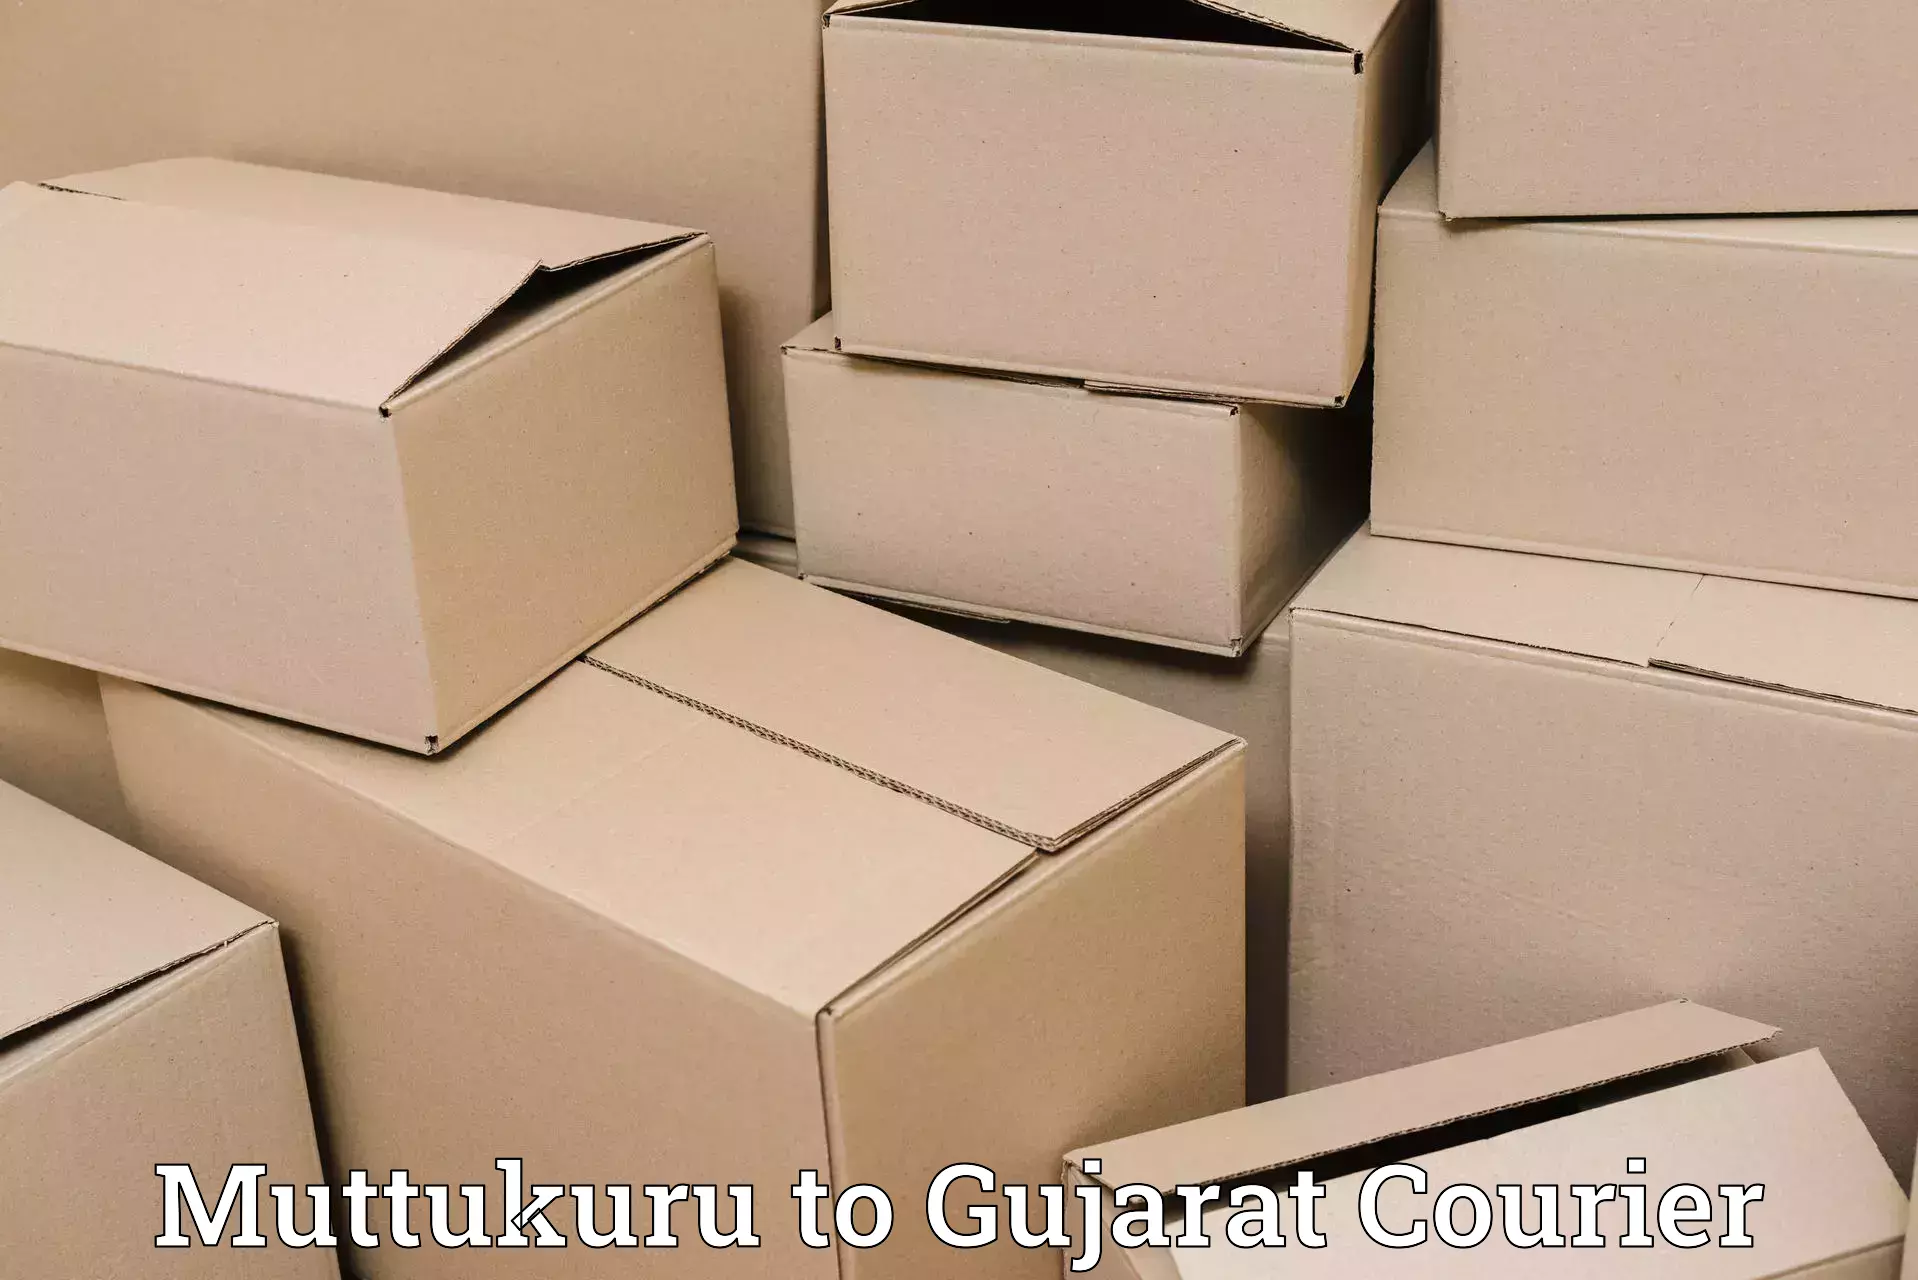 Customer-focused courier Muttukuru to IIIT Surat